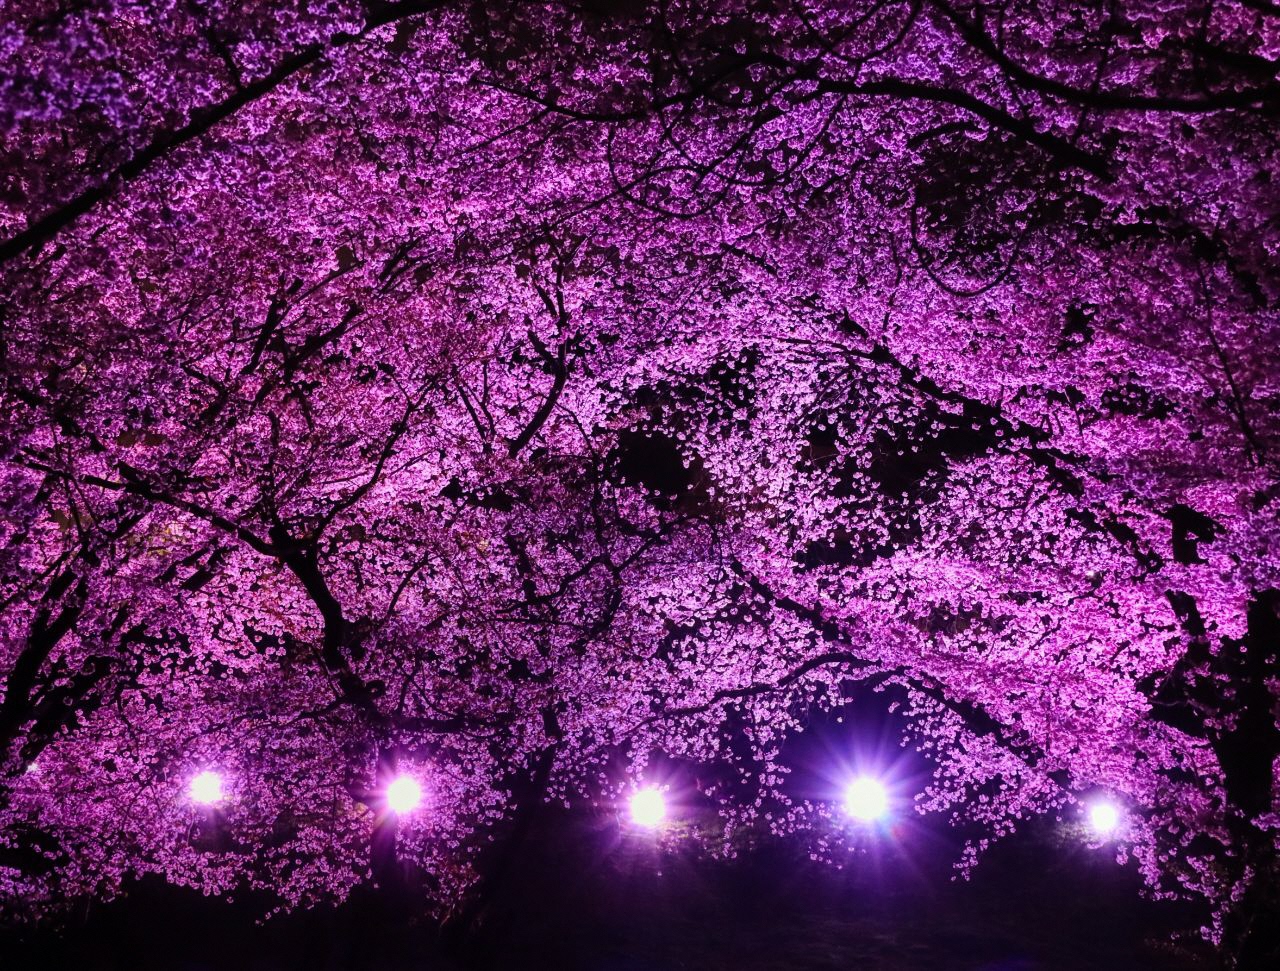 ピンク色にライトアップされた古室山の桜の写真